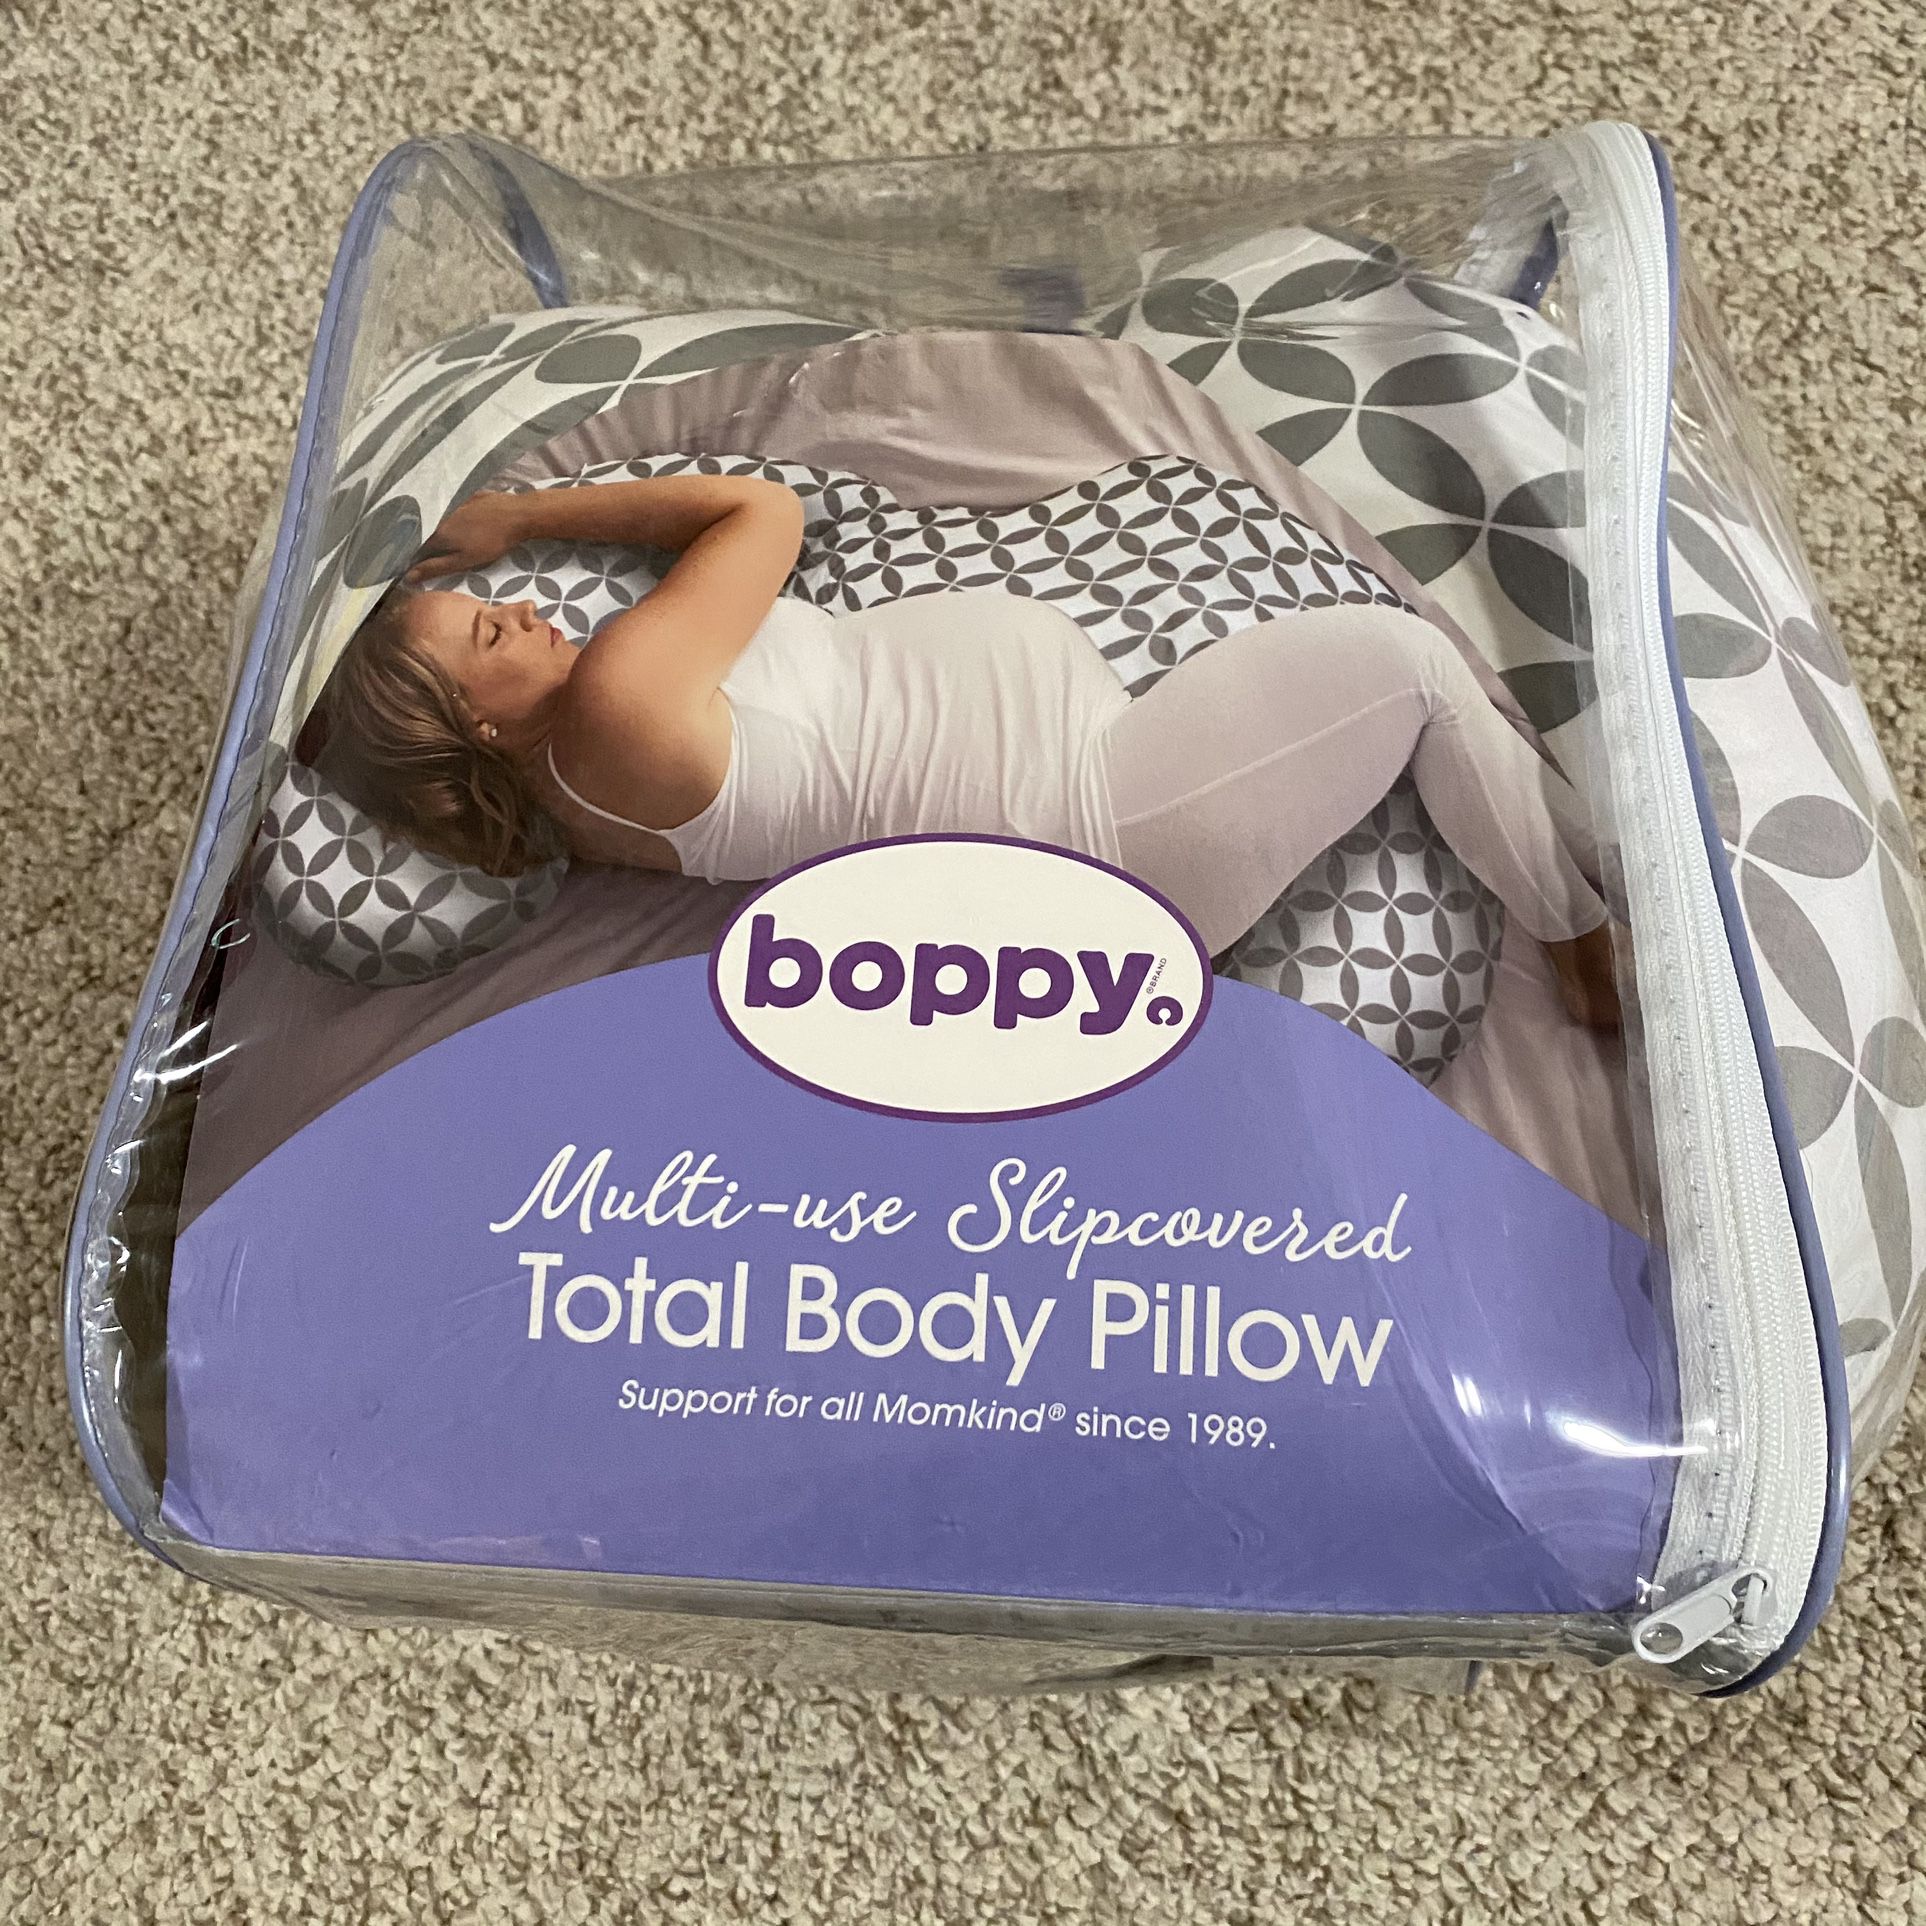  Boppy Multi-Use Slipcovered Total Body Pillow, Ring Toss Gray